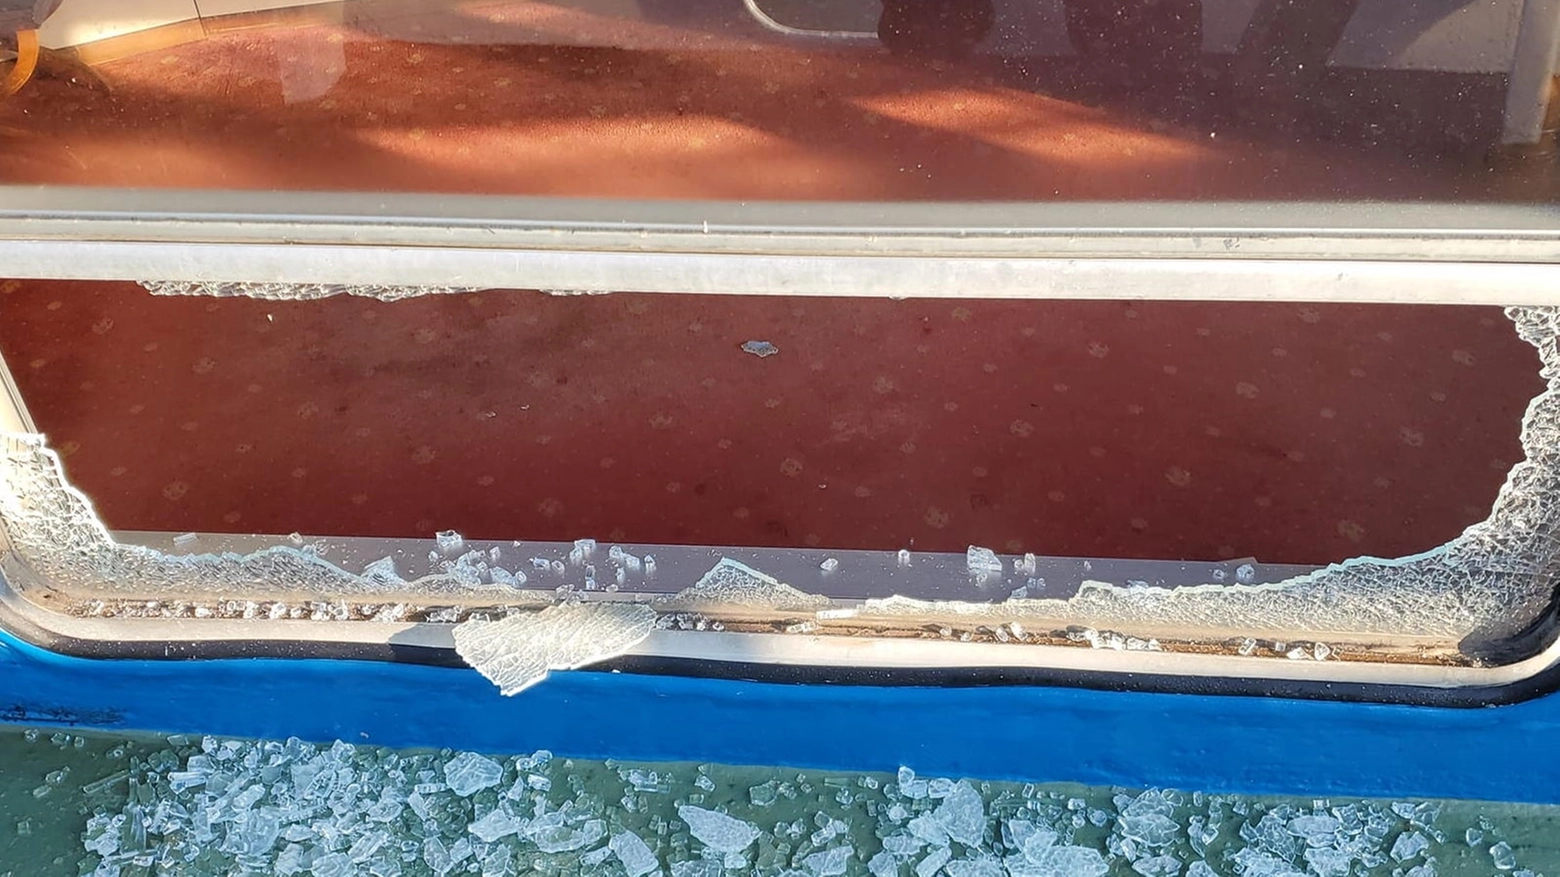 Uno dei finestrini danneggiati sulla Stradivari